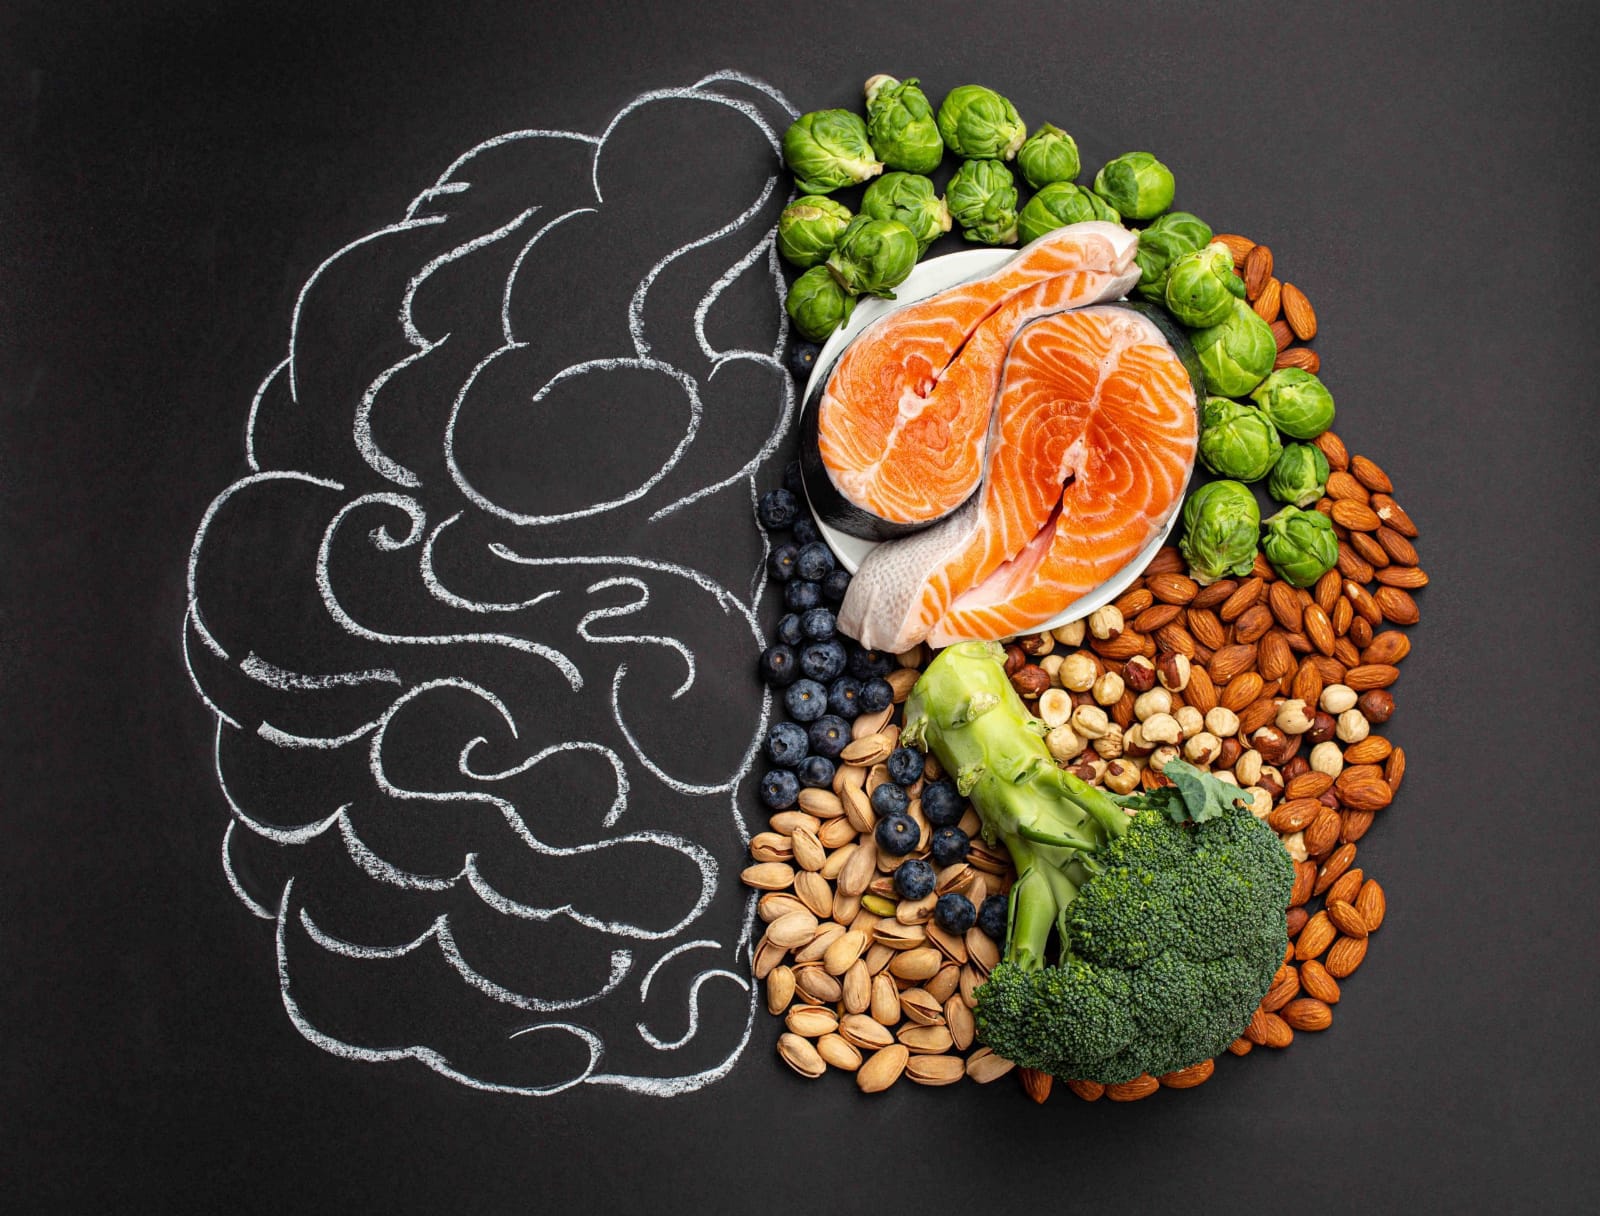 Daftar Makanan yang Sangat Baik untuk Kesehatan Otak